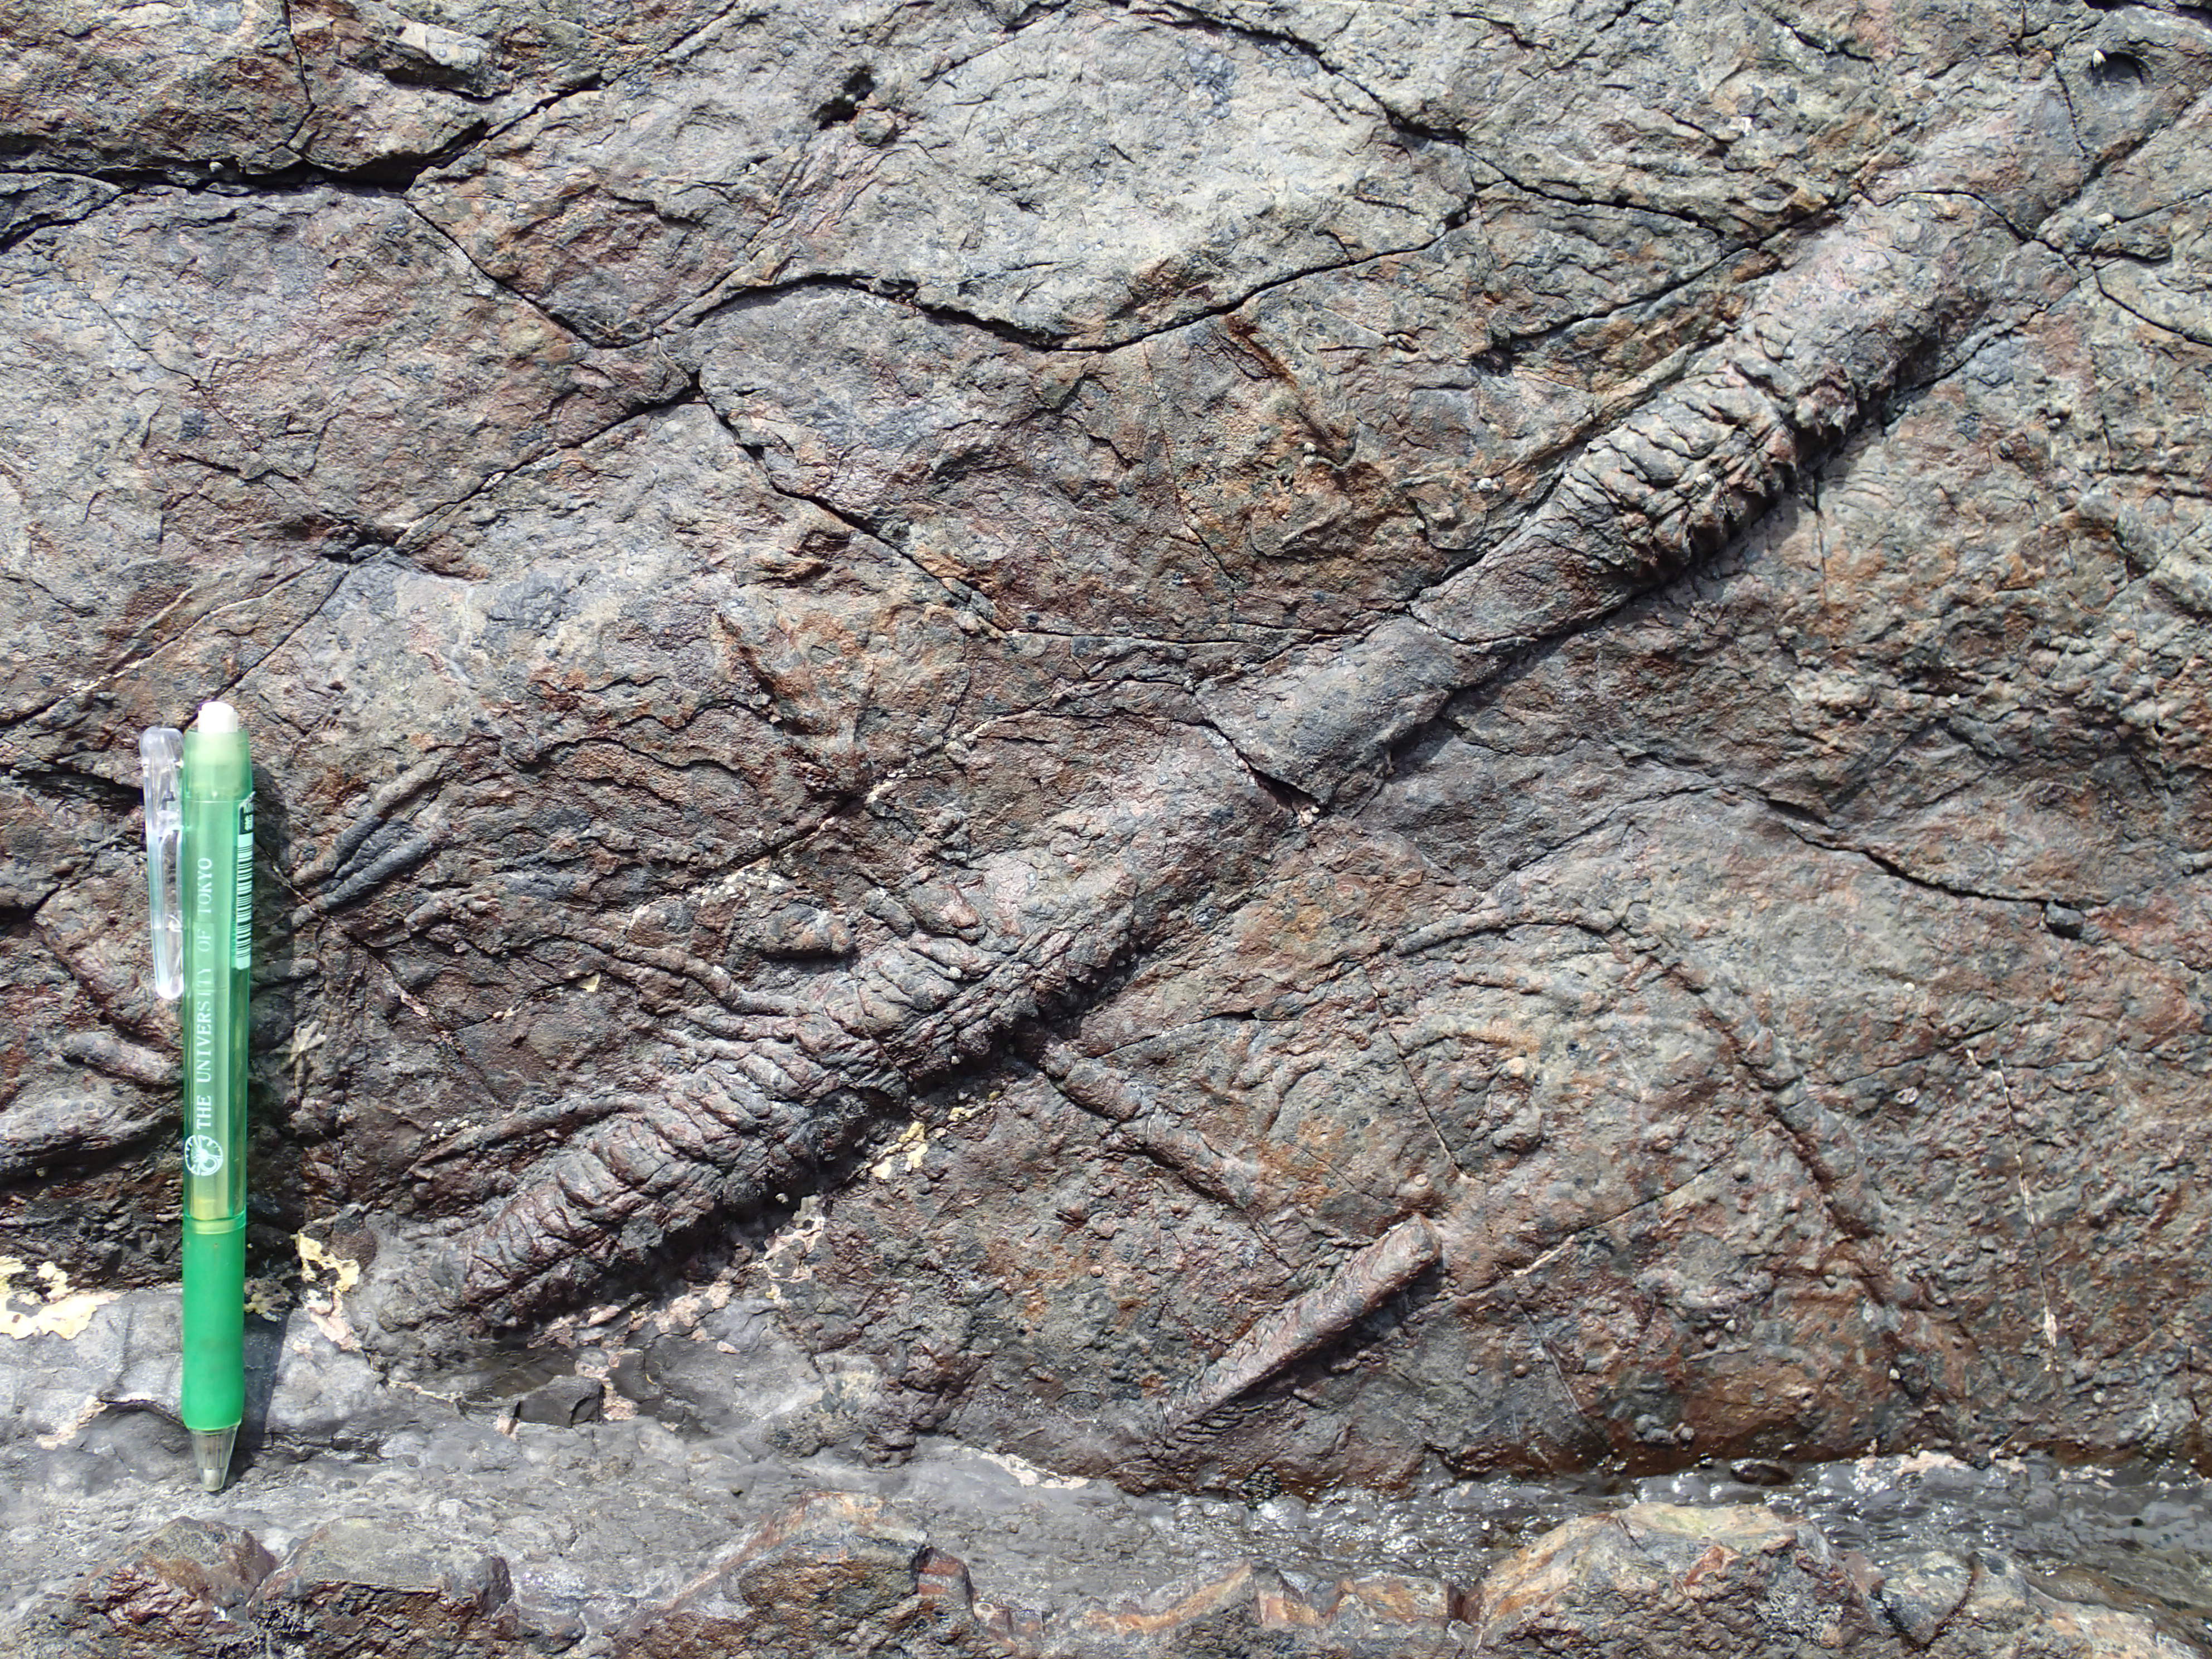 海底に生息していた二枚貝類の這い跡の生痕化石。より正確には、身をほとんど堆積物中に埋めた状態で海底を這い回っていたようだ。ただし生痕化石からより多くの生物学的情報を抽出するためには、似たような痕跡を残す現生の生物の研究などから推測するしかない。(写真提供：千葉大学・泉賢太郎)